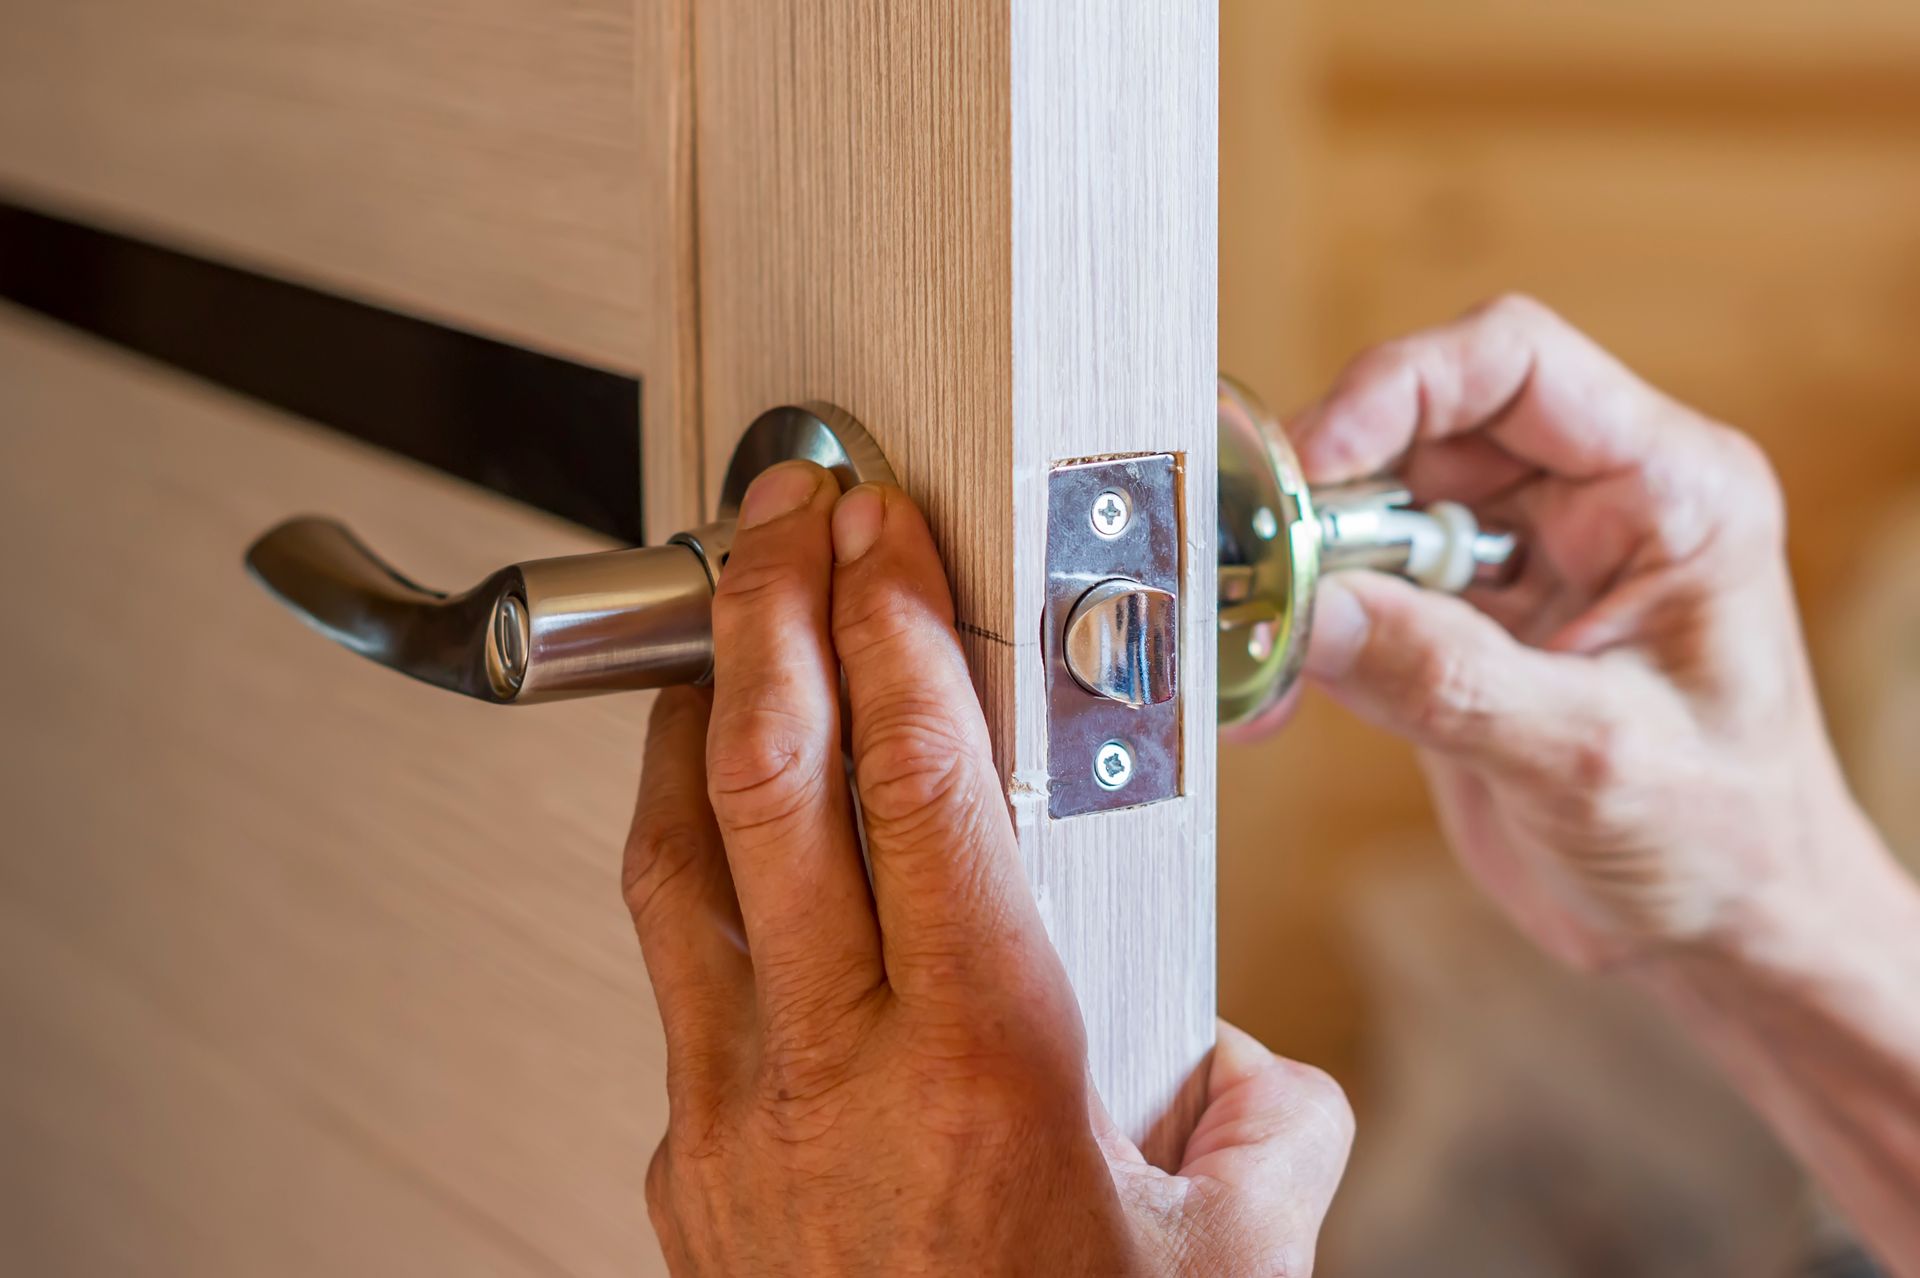 a person is installing a door handle on a wooden door